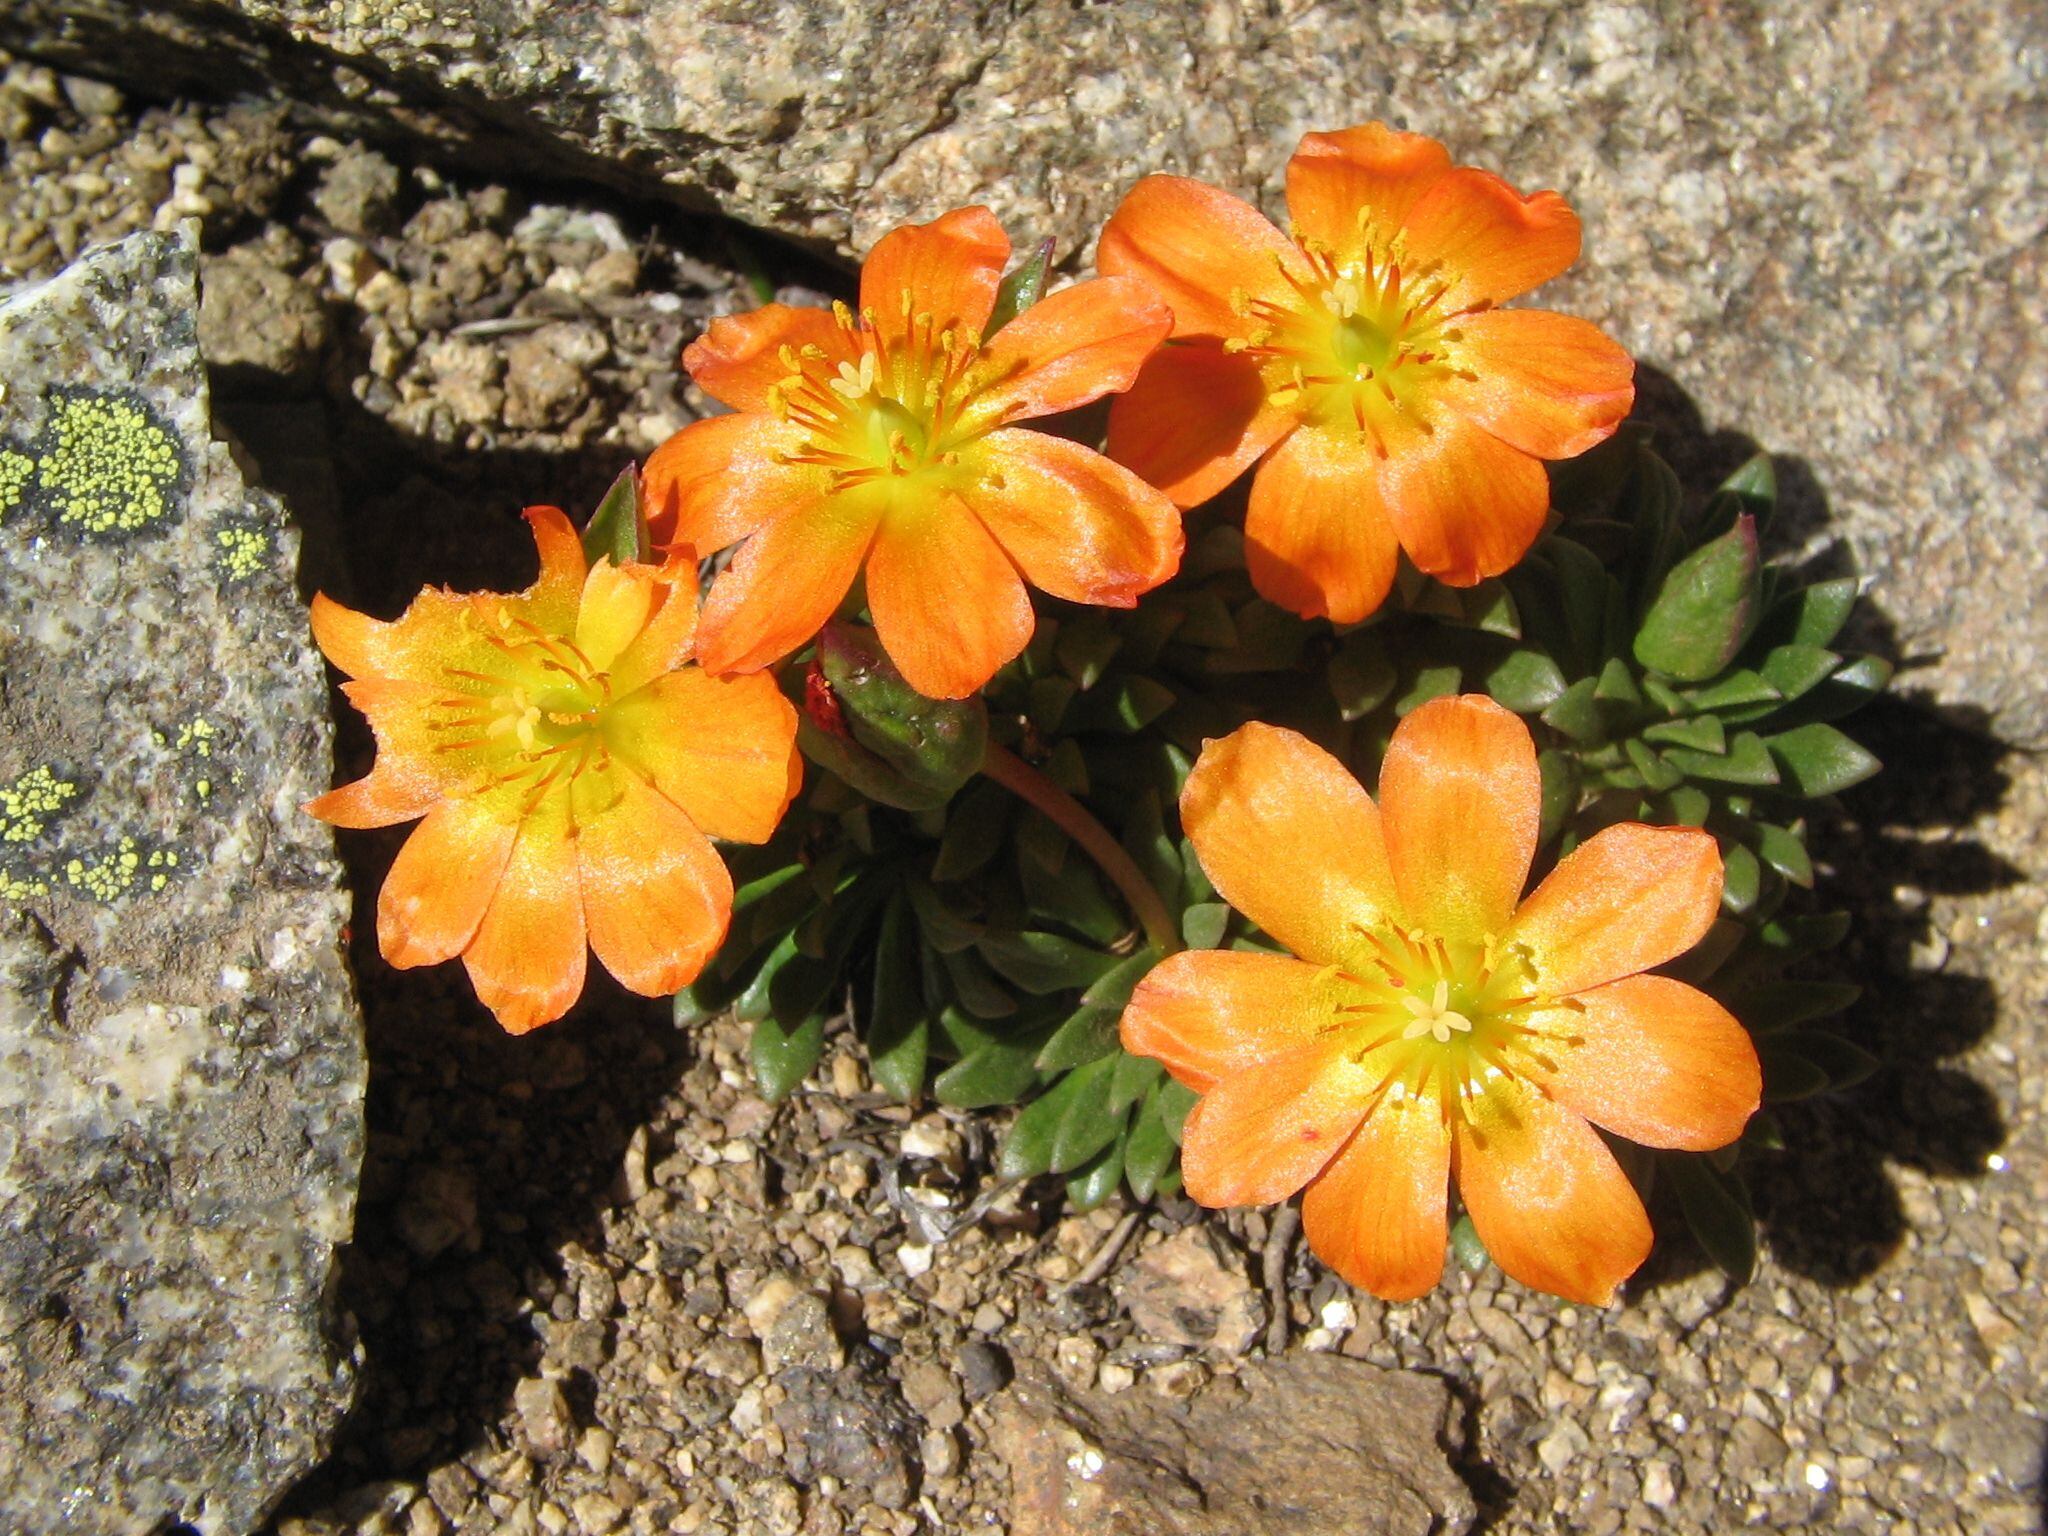 La calandrinia es una especie que la botánica Marcela Ferreyra observó en el Volcán Copahue, en Neuquén /M. Ferreyra